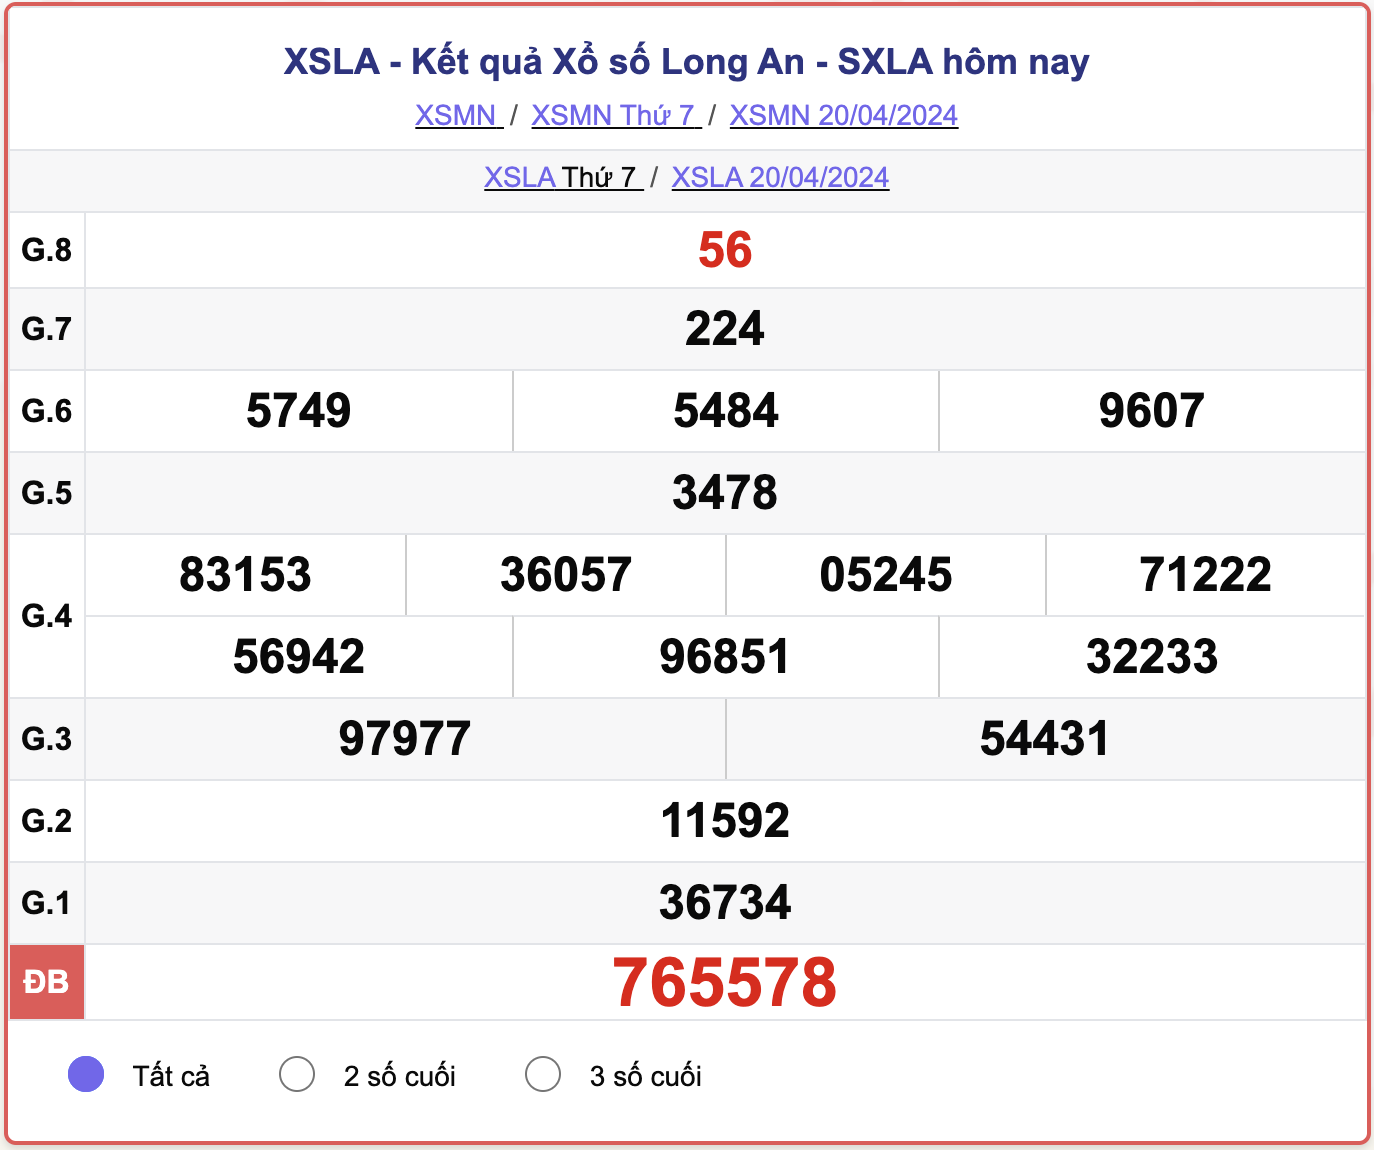 XSLA thứ 7, kết quả xổ số Long An ngày 20/4/2024.